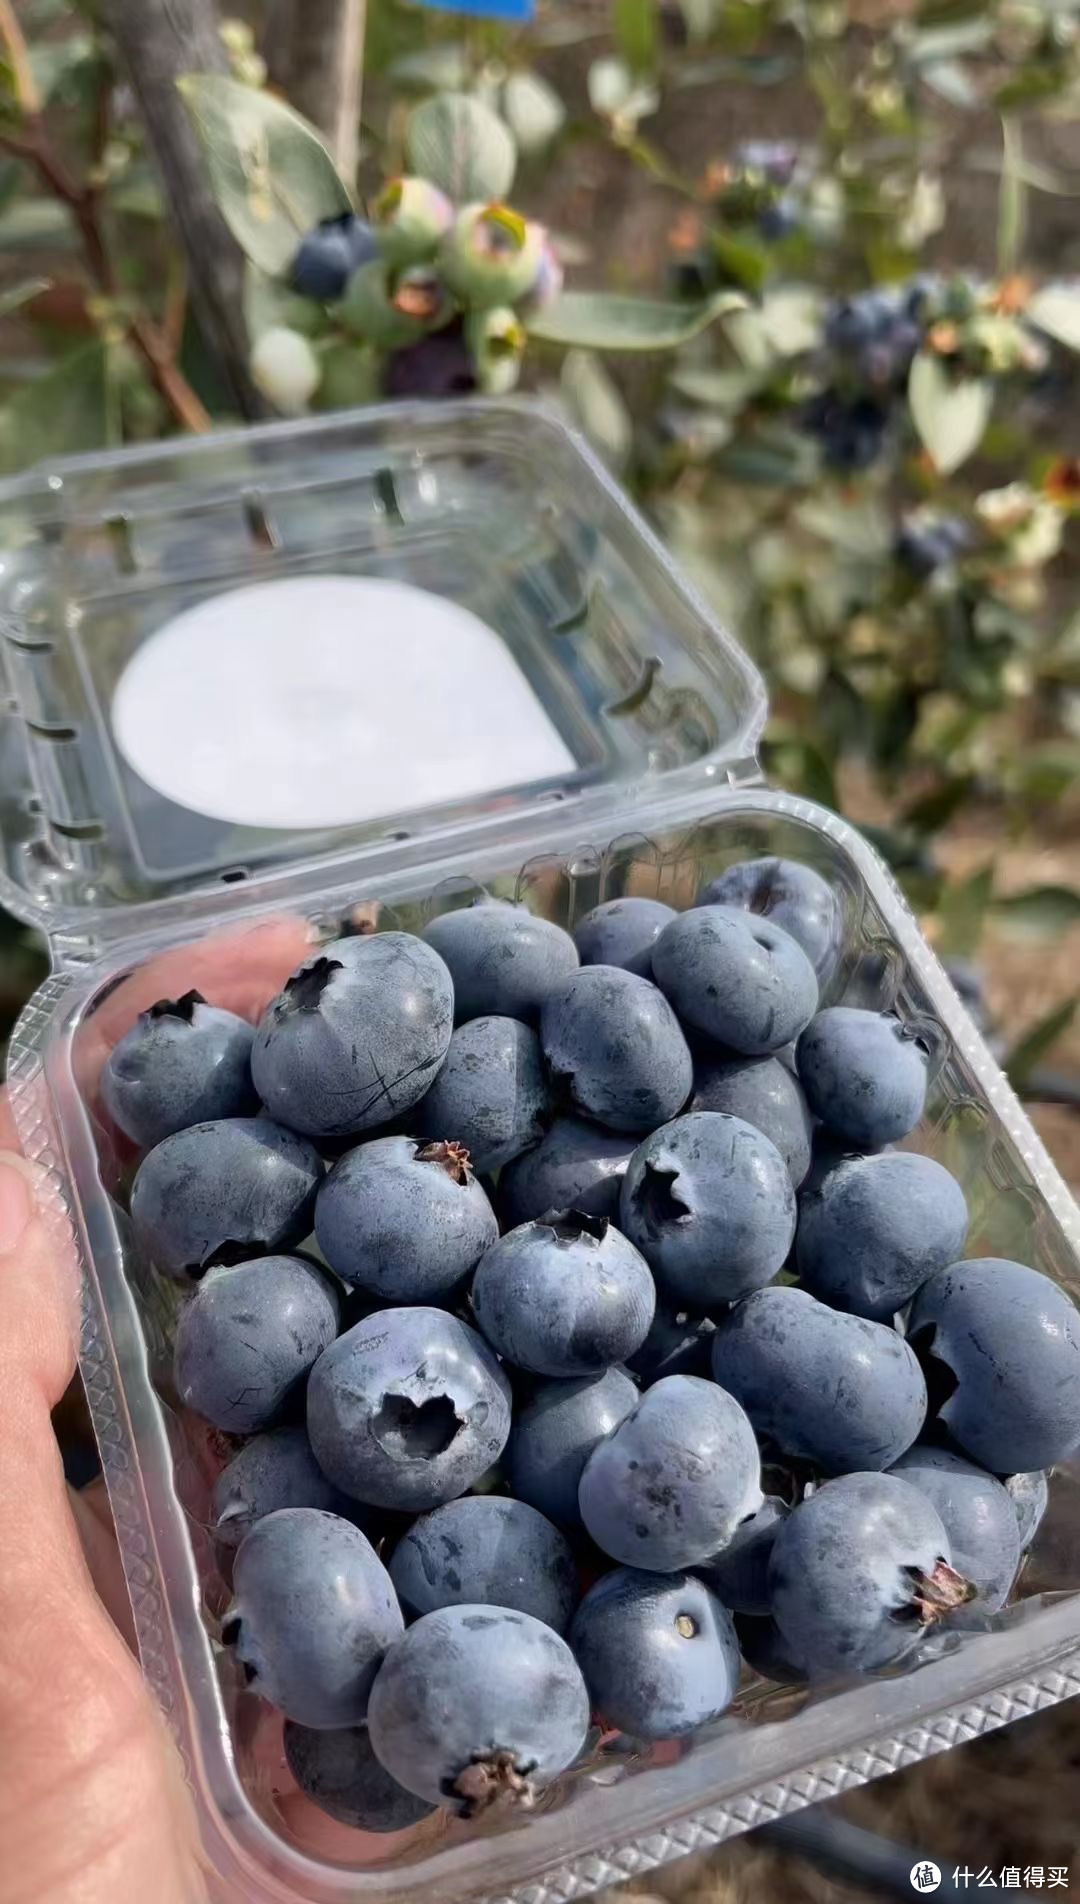 又到了吃蓝莓的季节了，多吃蓝莓对身体有什么好处呢？